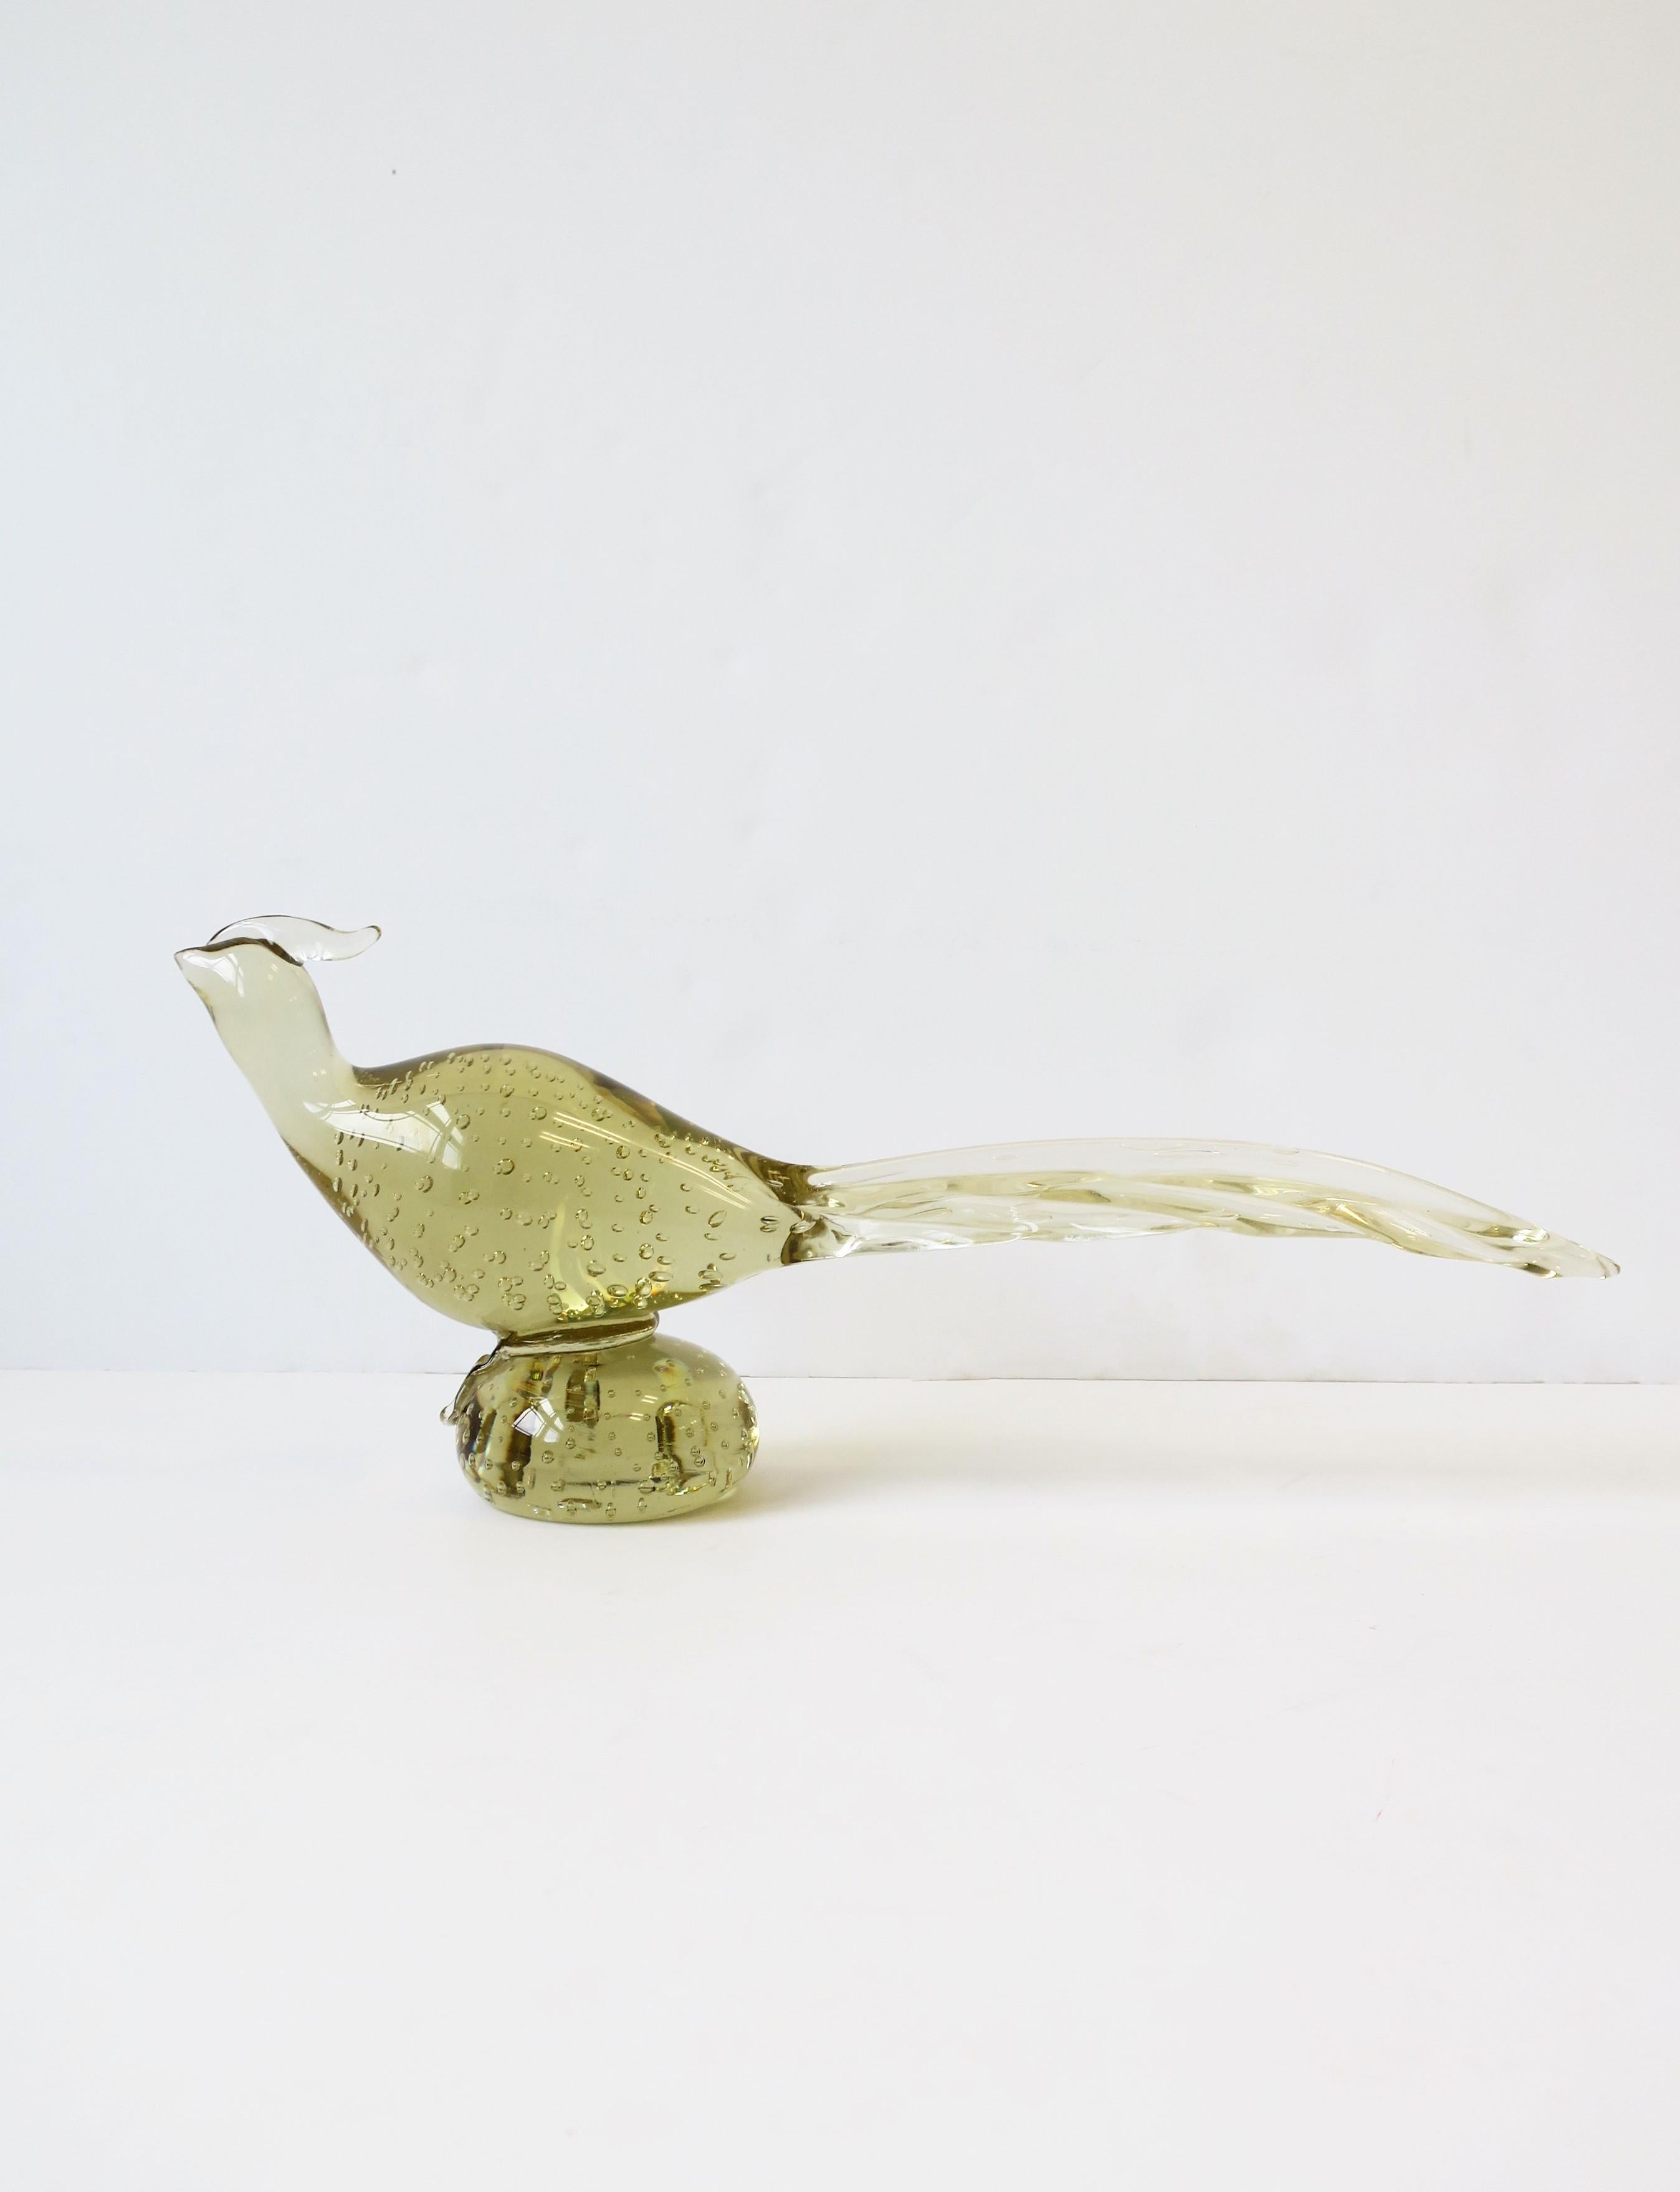 Magnifique sculpture d'oiseau faisan en verre d'art italien de Murano, datant du milieu du siècle dernier, attribuée au designer italien Archimede Seguso, vers le milieu du 20e siècle, années 1960, Italie. L'oiseau faisan est d'une teinte jaune